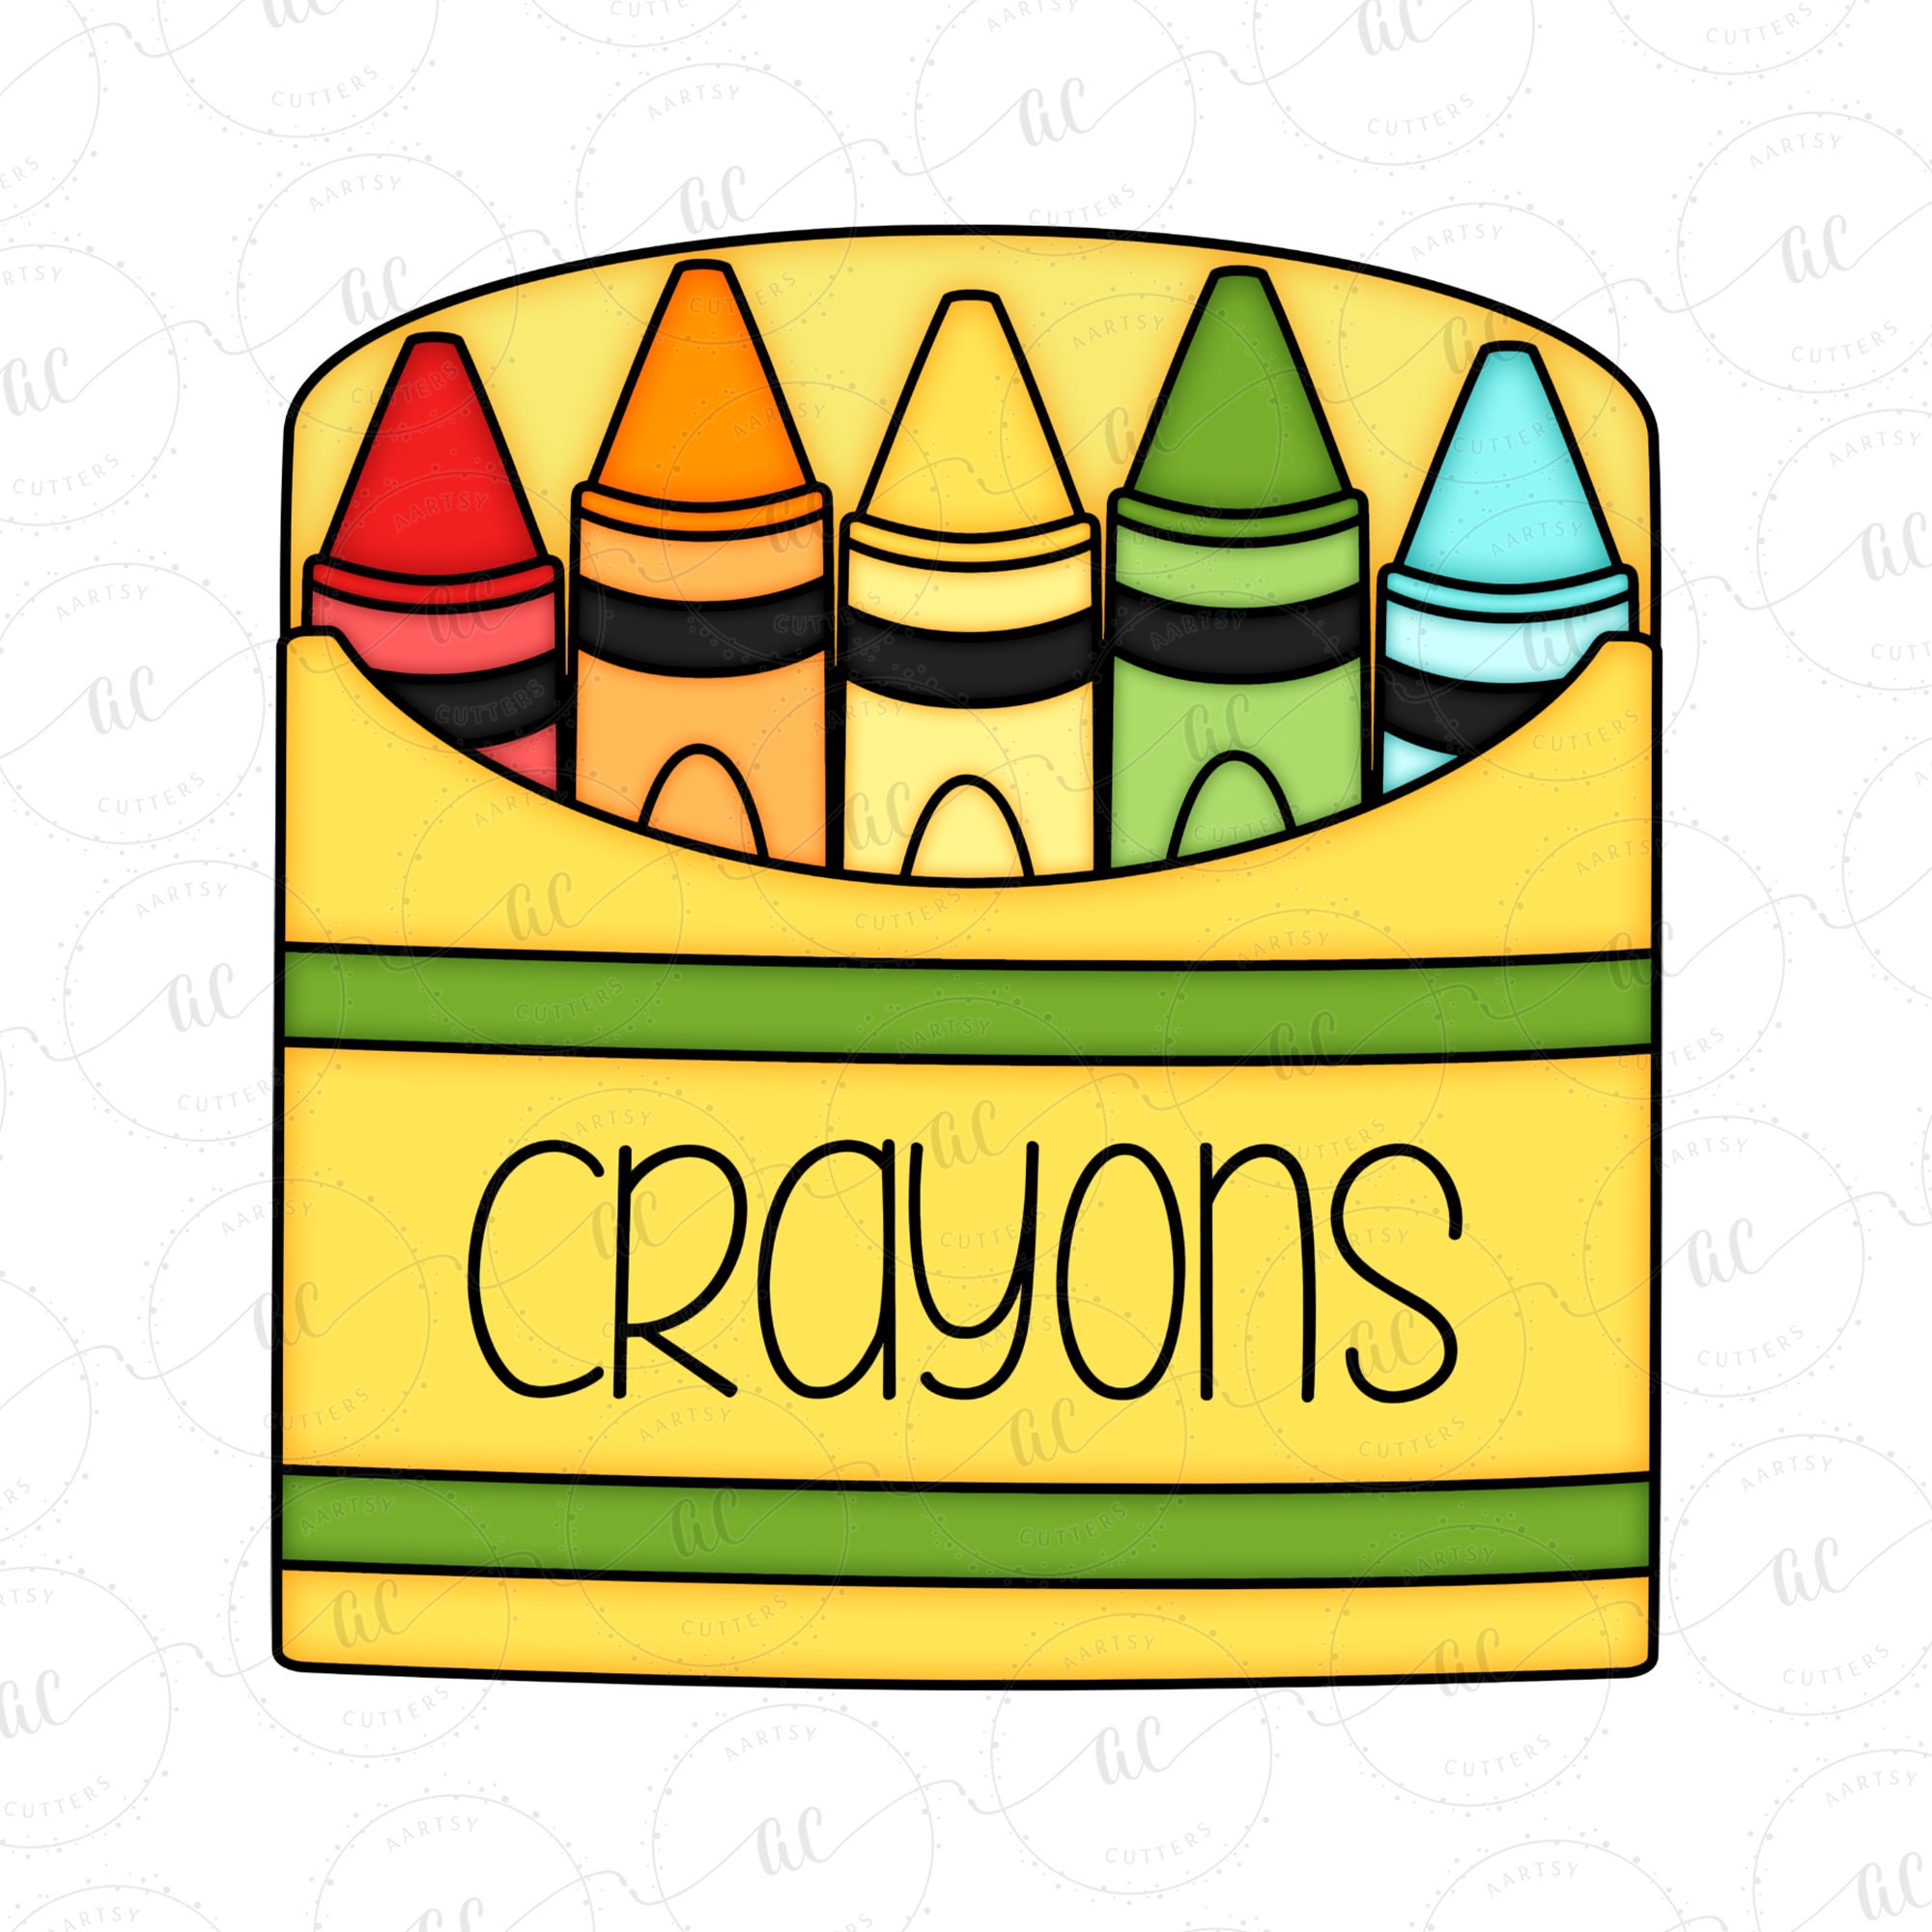 Crayon Cookie Box – Designer Cookies ™ STUDIO